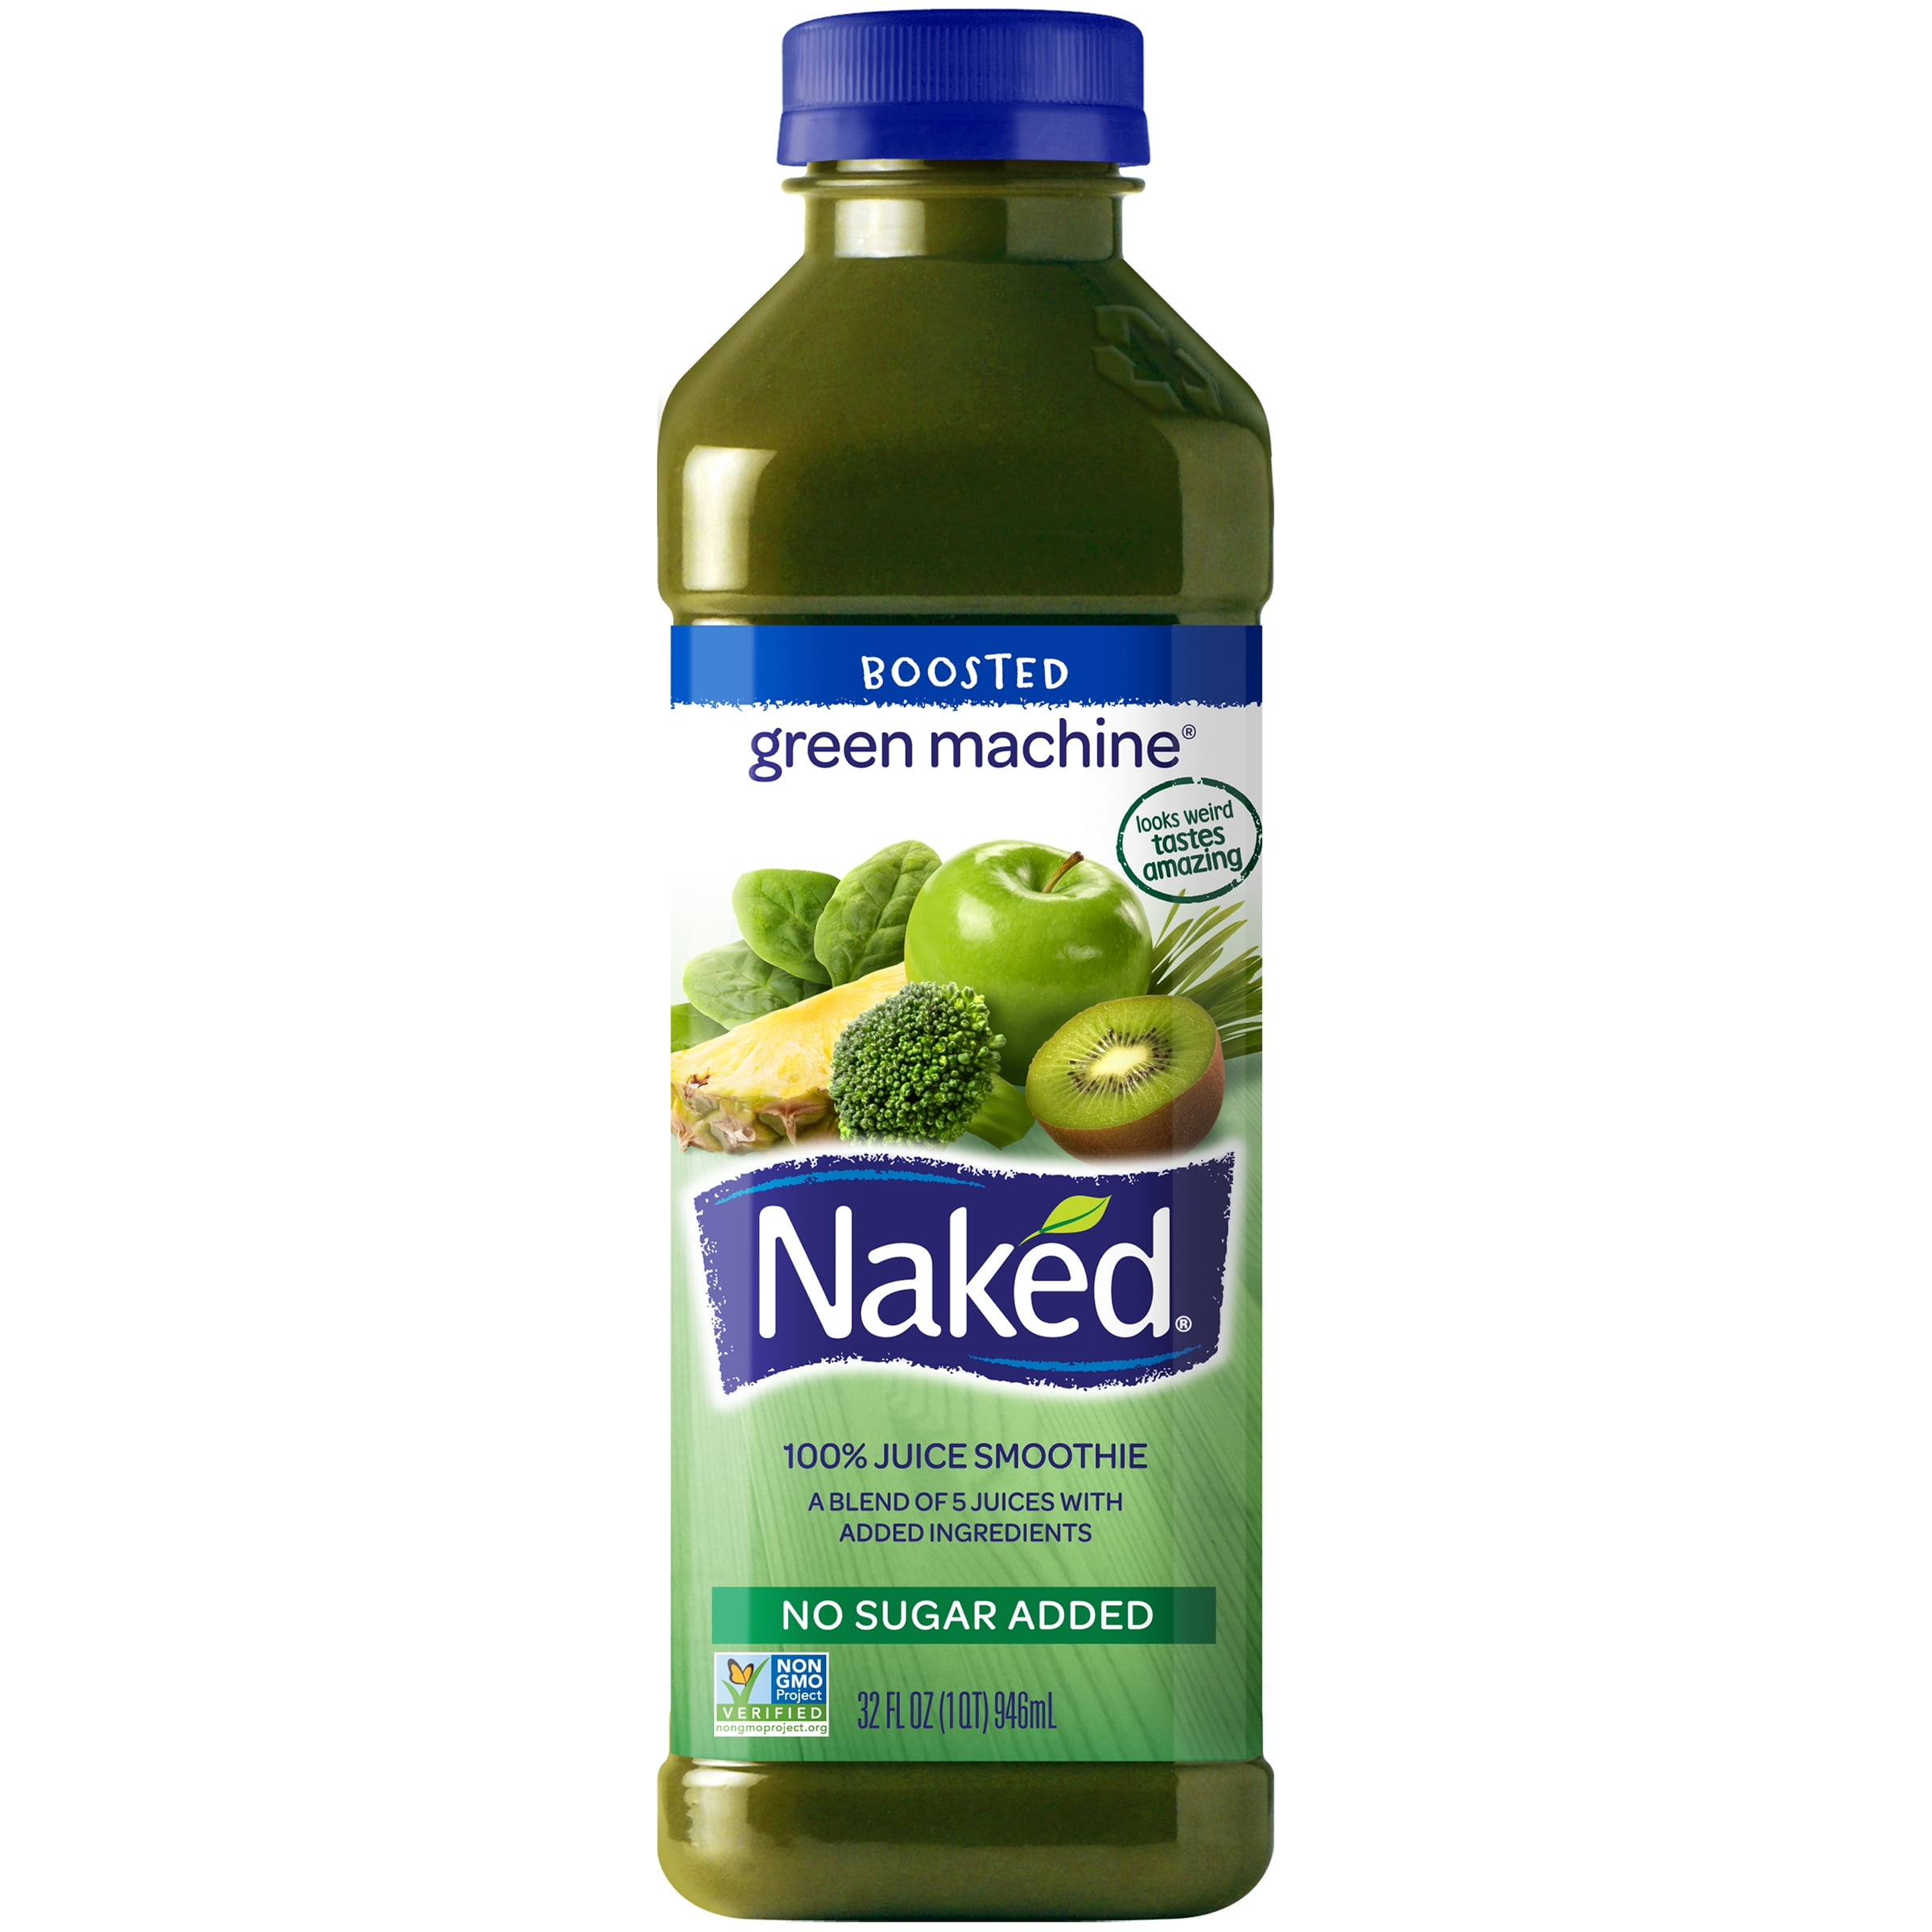 green margarita bottle